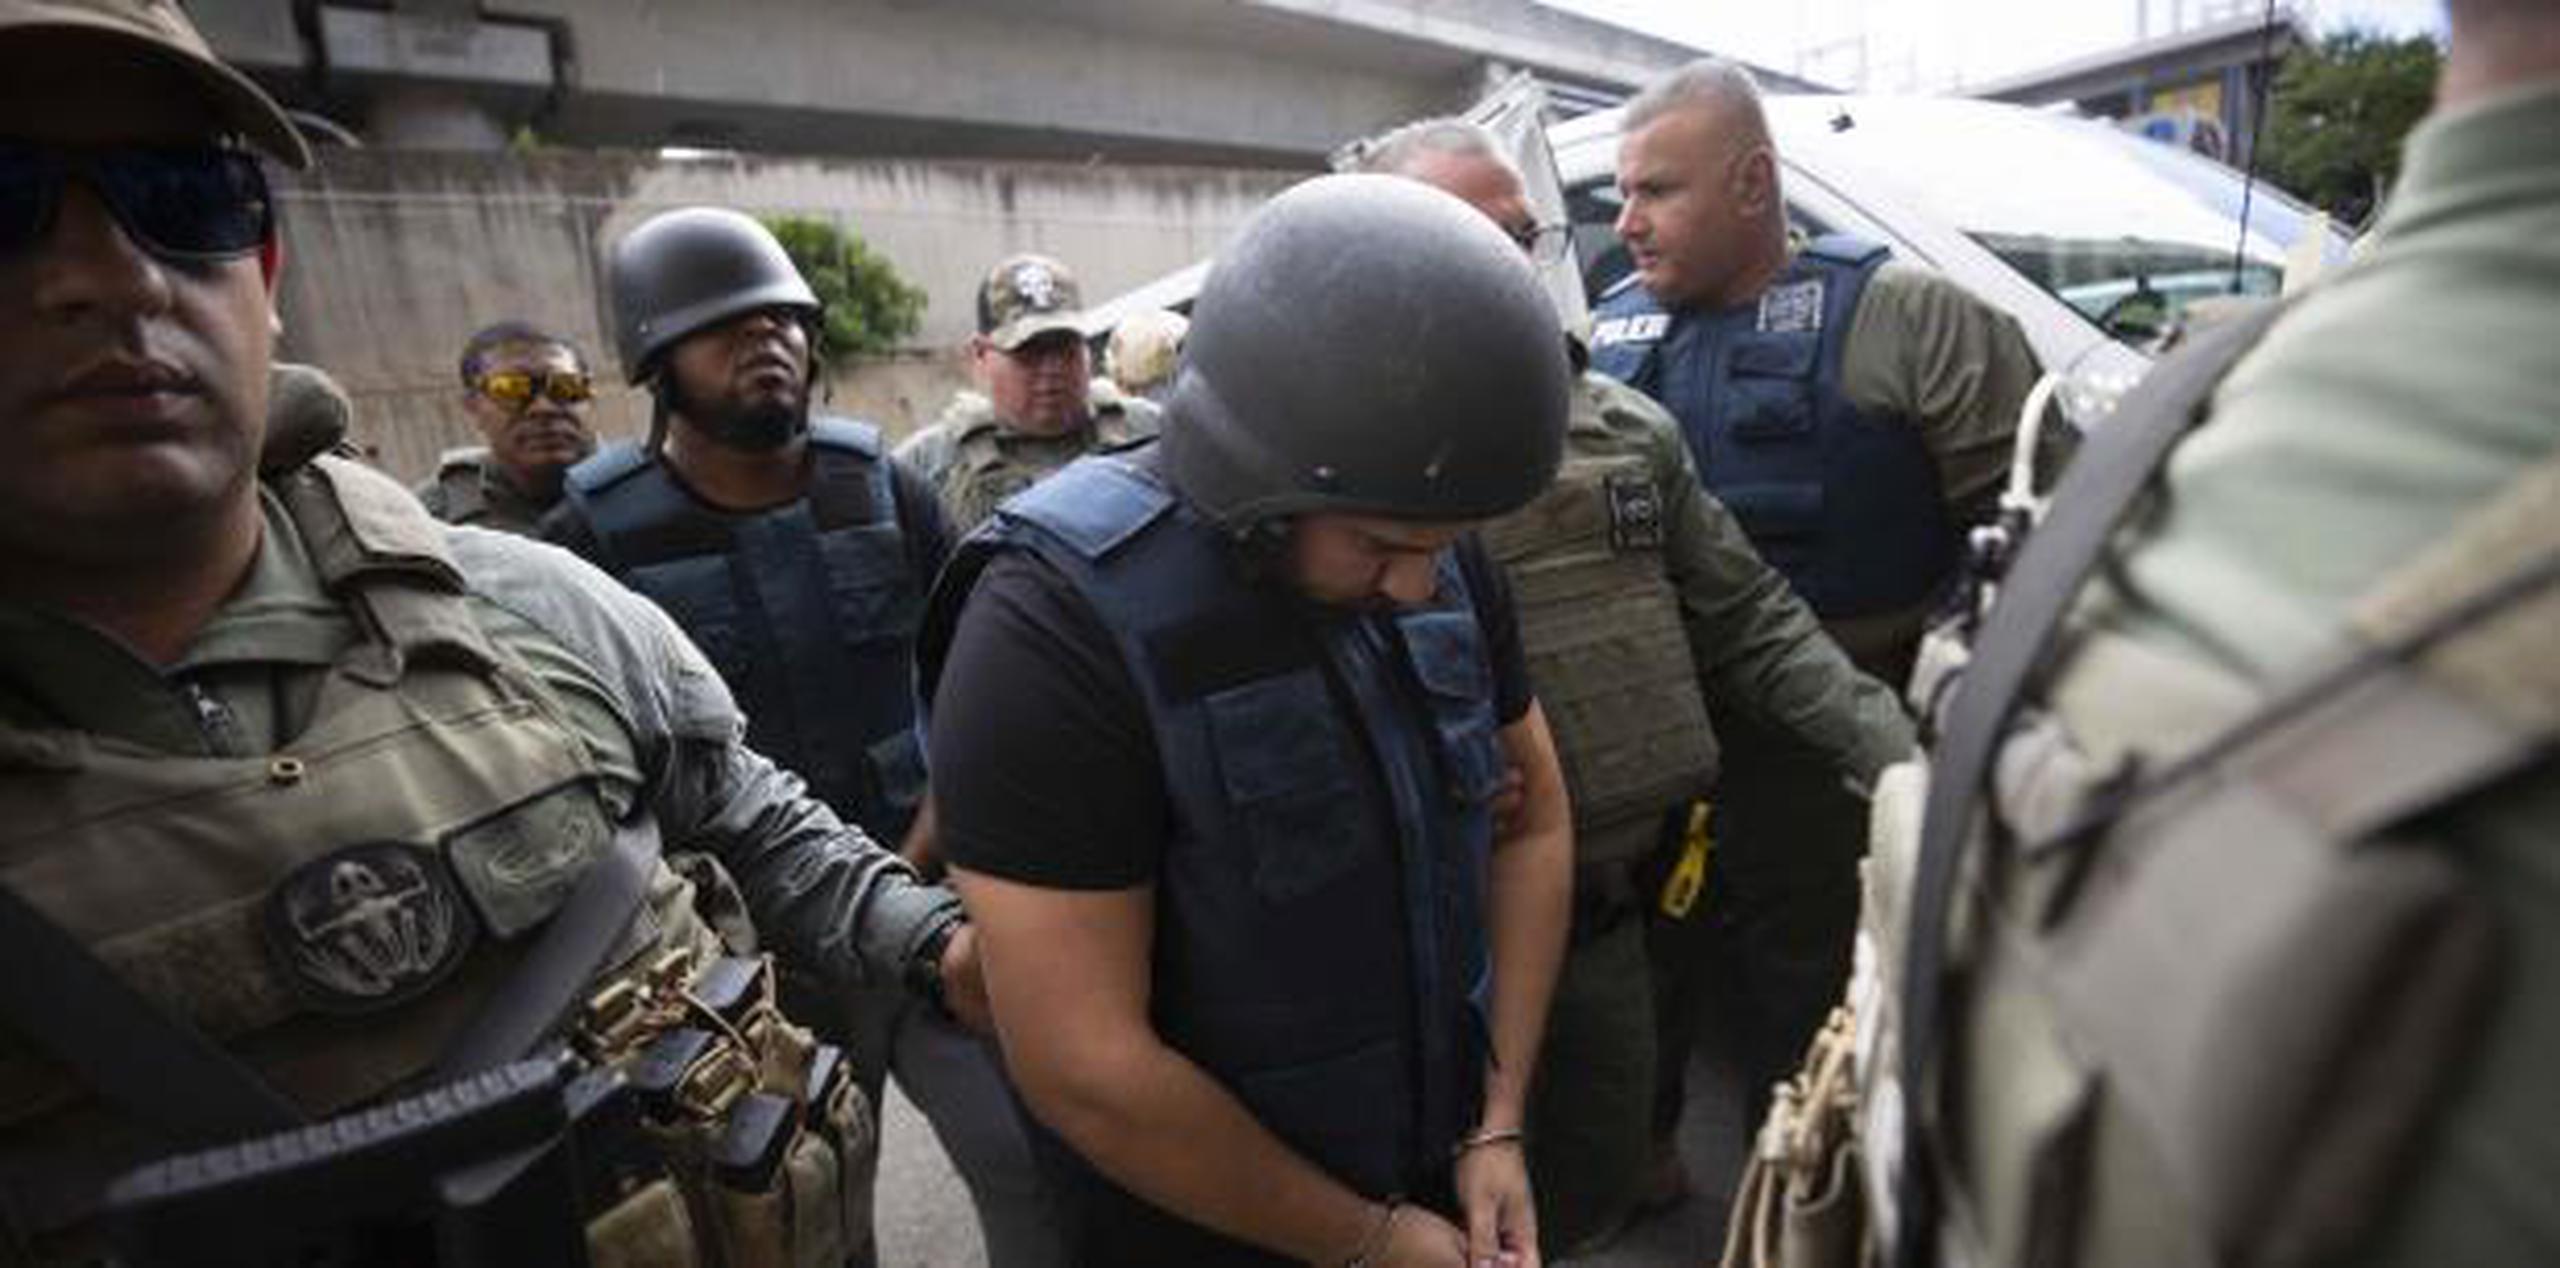 La Policía ordenó la movilización de un equipo de SWAT para que asistan a agentes del Negociado de Arrestos Especiales y Extradiciones en la movilización de los sospechosos hasta el Tribunal de Primera Instancia de San Juan. (xavier.araujo@gfrmedia.com)